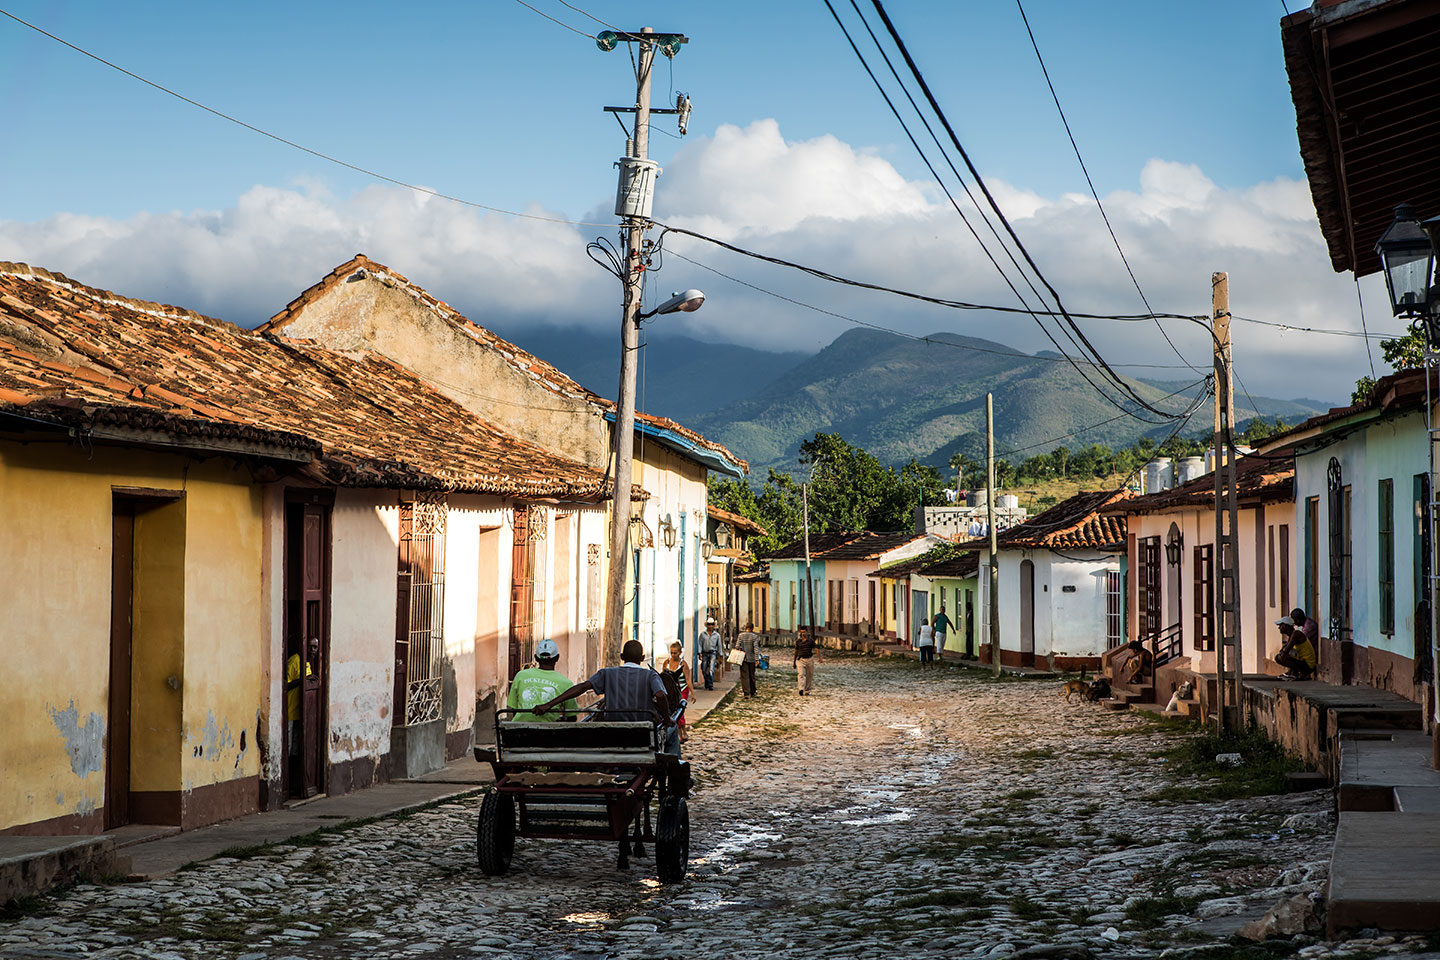 Old streets of Trinidad in Cuba